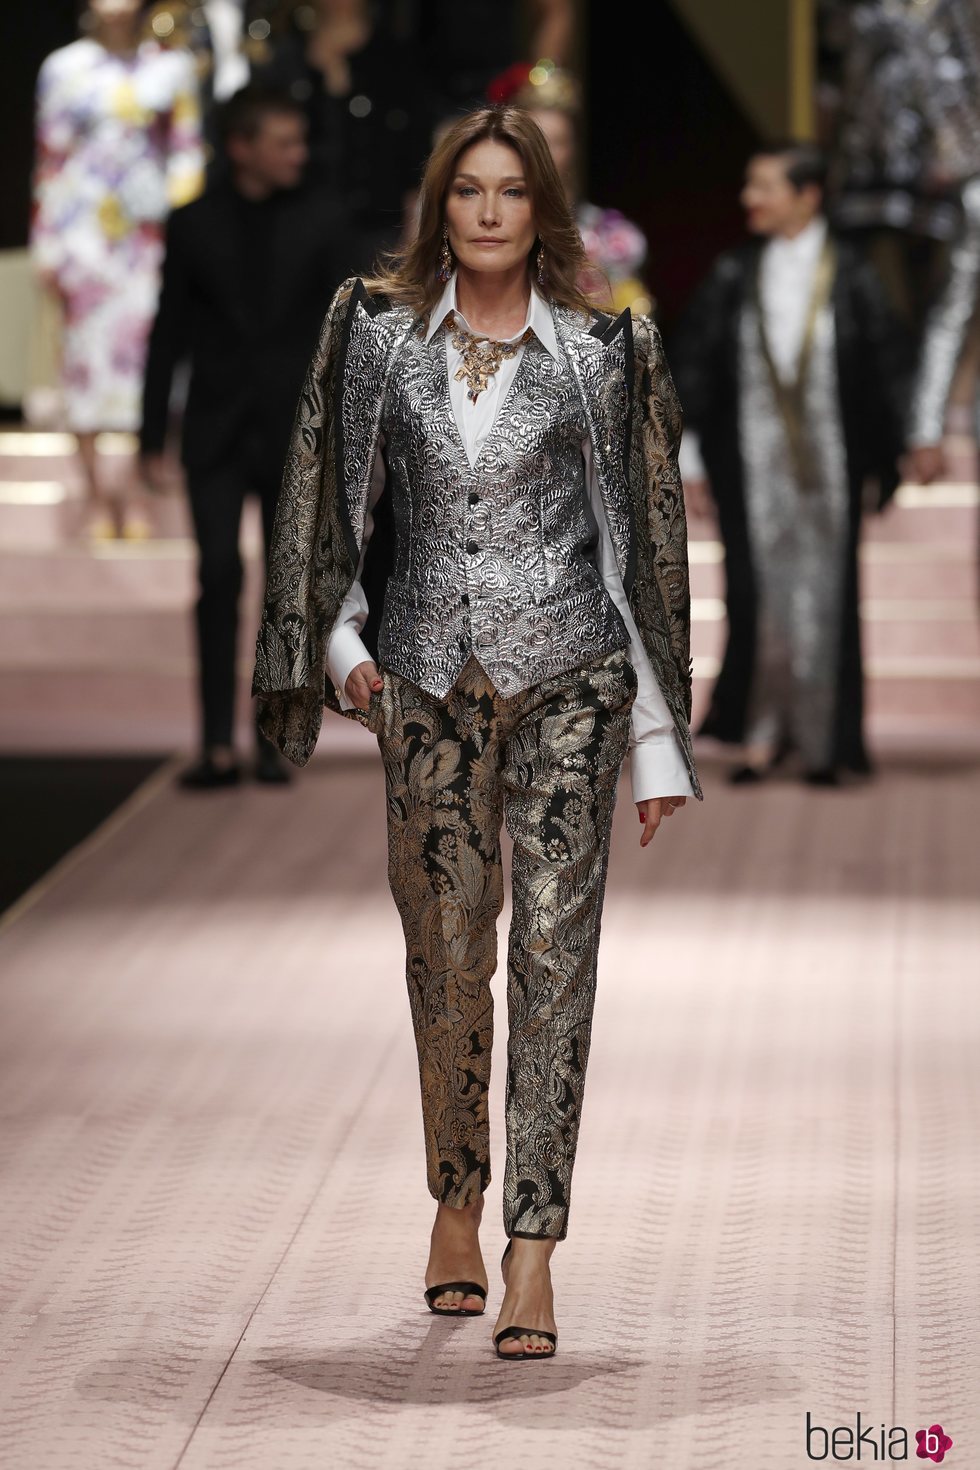 Carla Bruni en el desfile de Dolce&Gabbana primavera/verano 2019 en la Milán Fashion Week